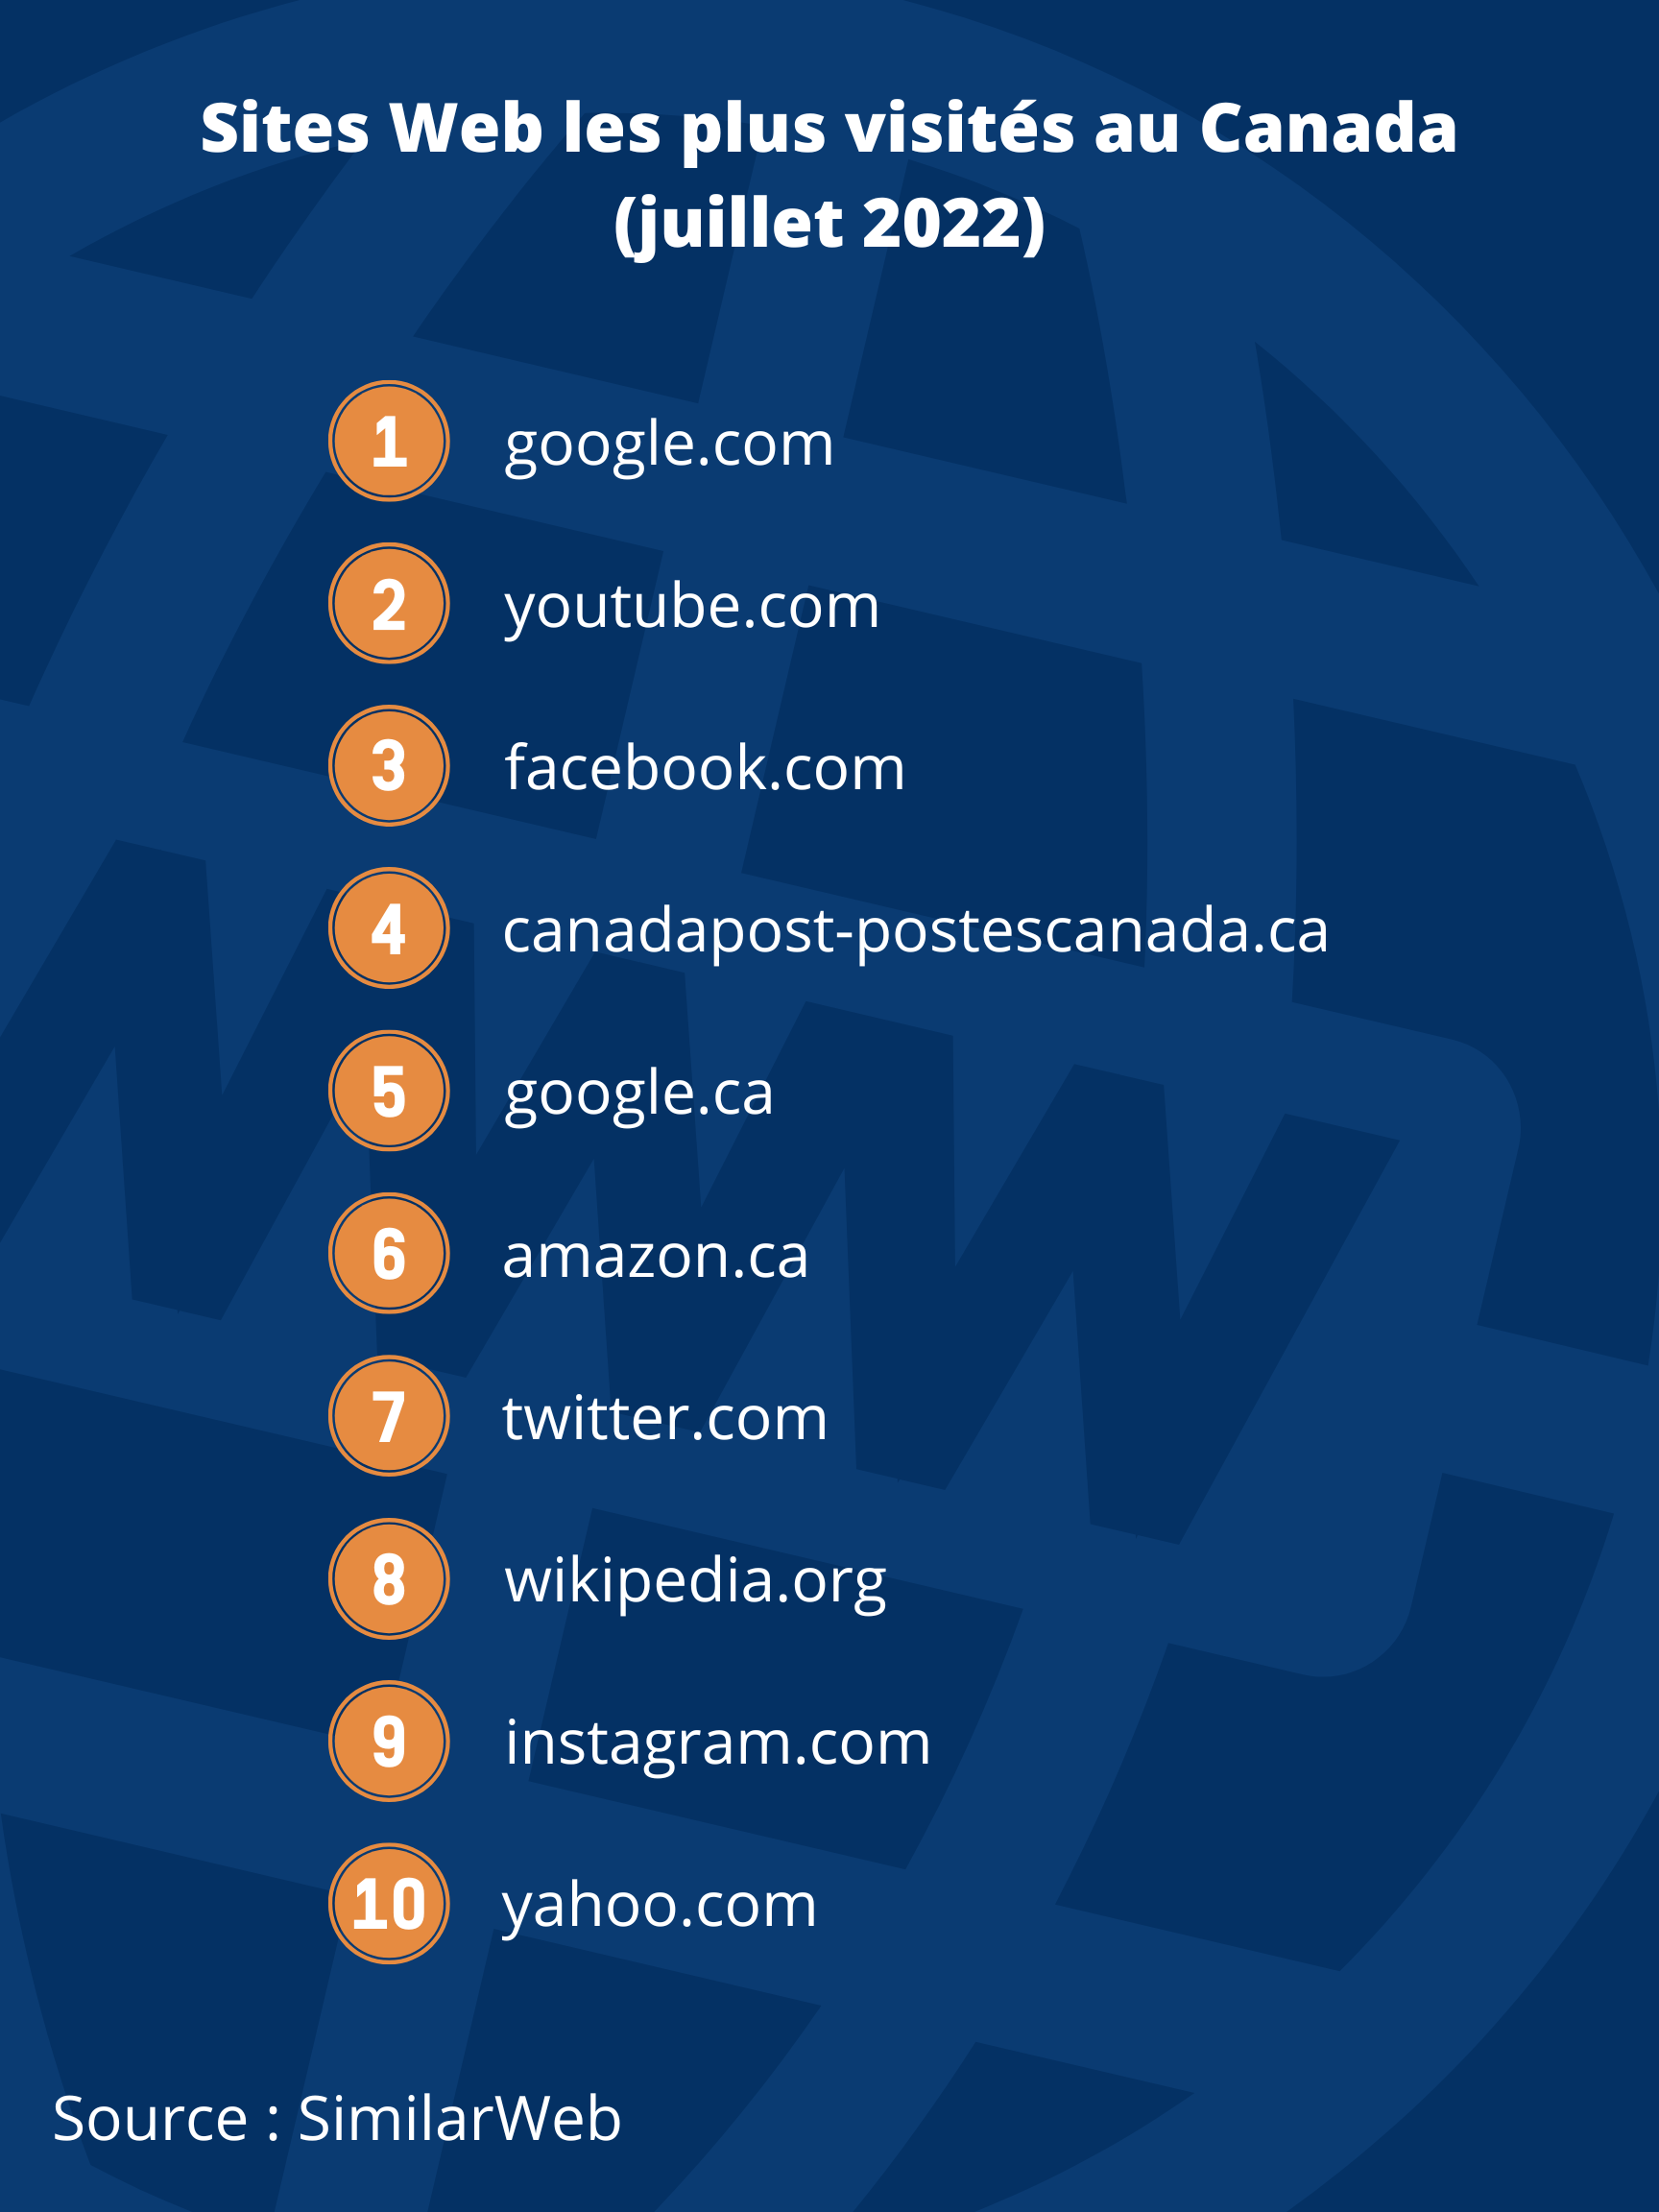 Sites Web les plus visités au Canada (juillet 2022), de 1 à 10 : google.com, youtube.com, facebook.com, canadapost-postescanada.ca, google.ca, amazon.ca, twitter.com, wikipedia.org, instagram.com, yahoo.com.